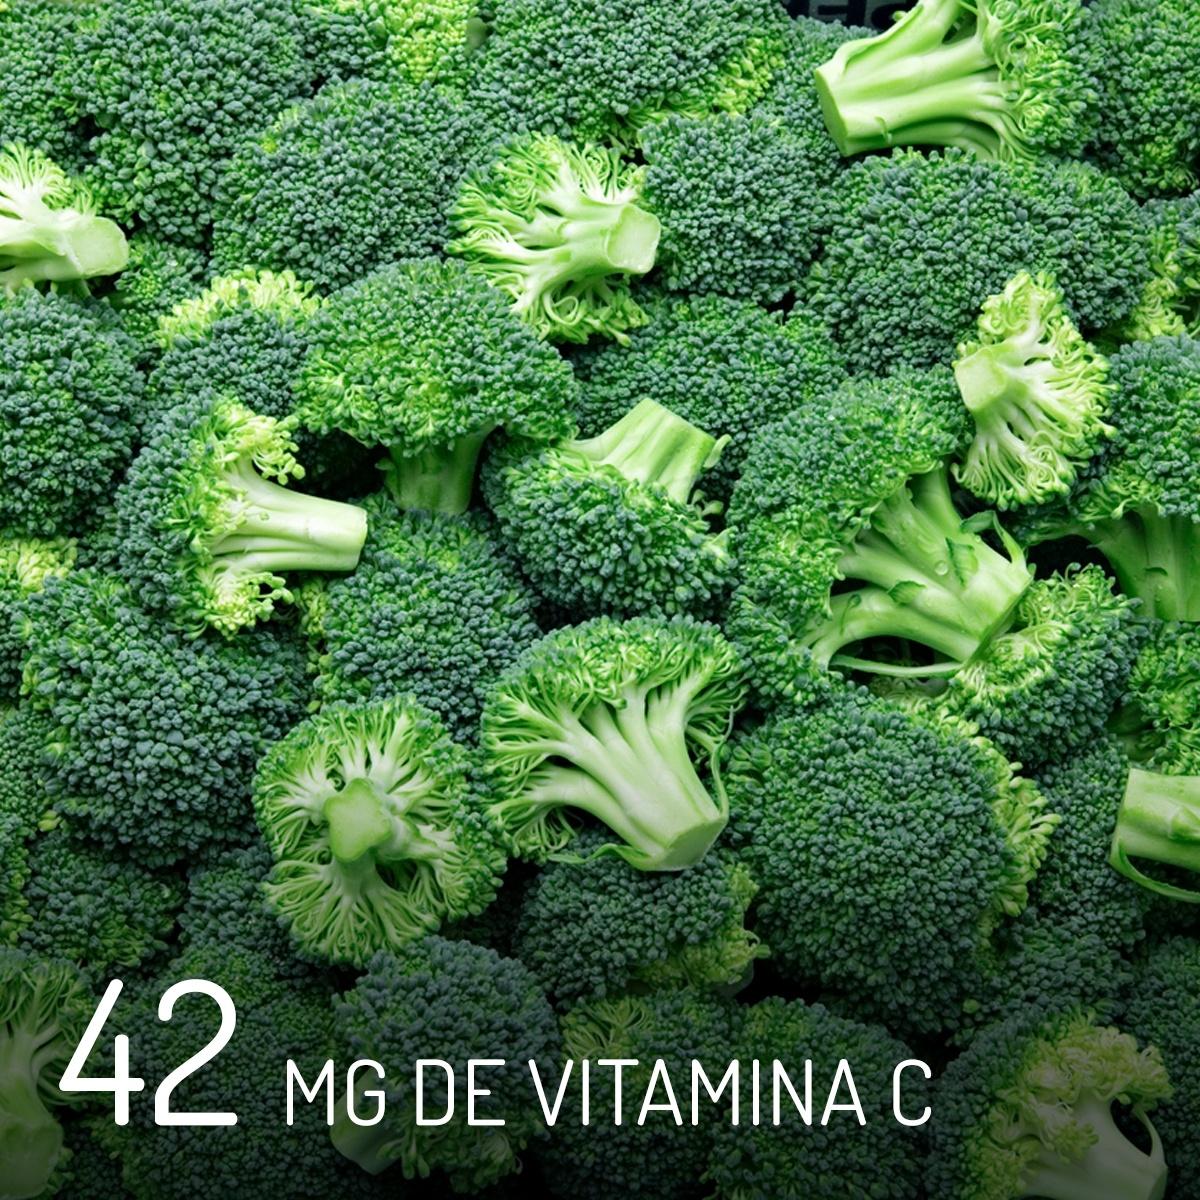 Brócolis vitamina C - iStock/Arte UOL